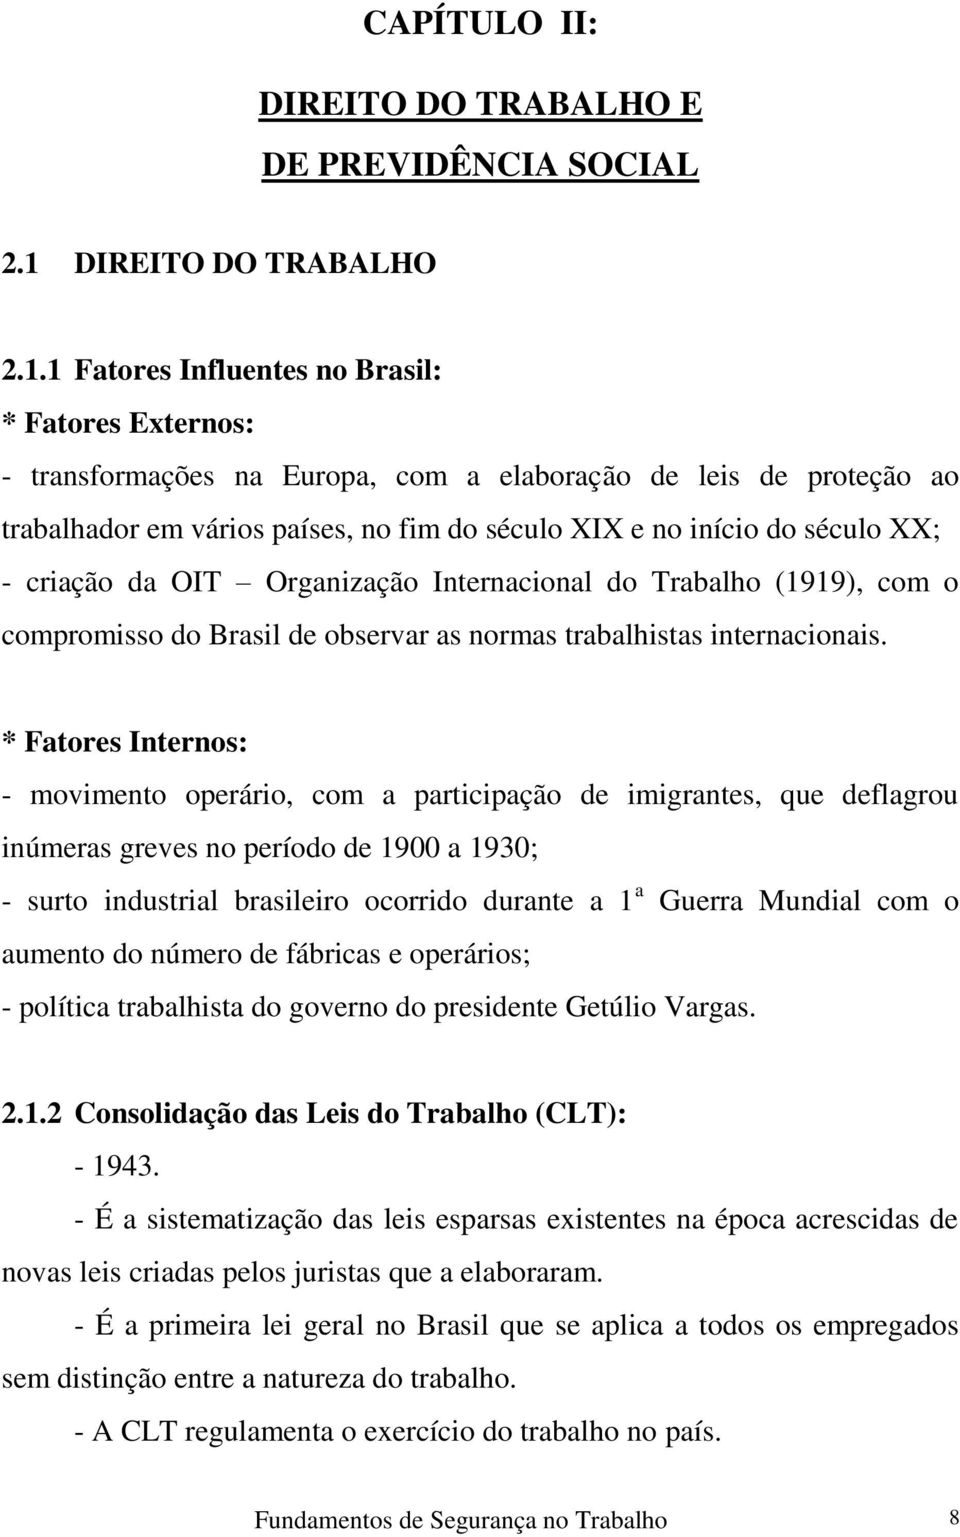 1 Fatores Influentes no Brasil: * Fatores Externos: - transformações na Europa, com a elaboração de leis de proteção ao trabalhador em vários países, no fim do século XIX e no início do século XX; -